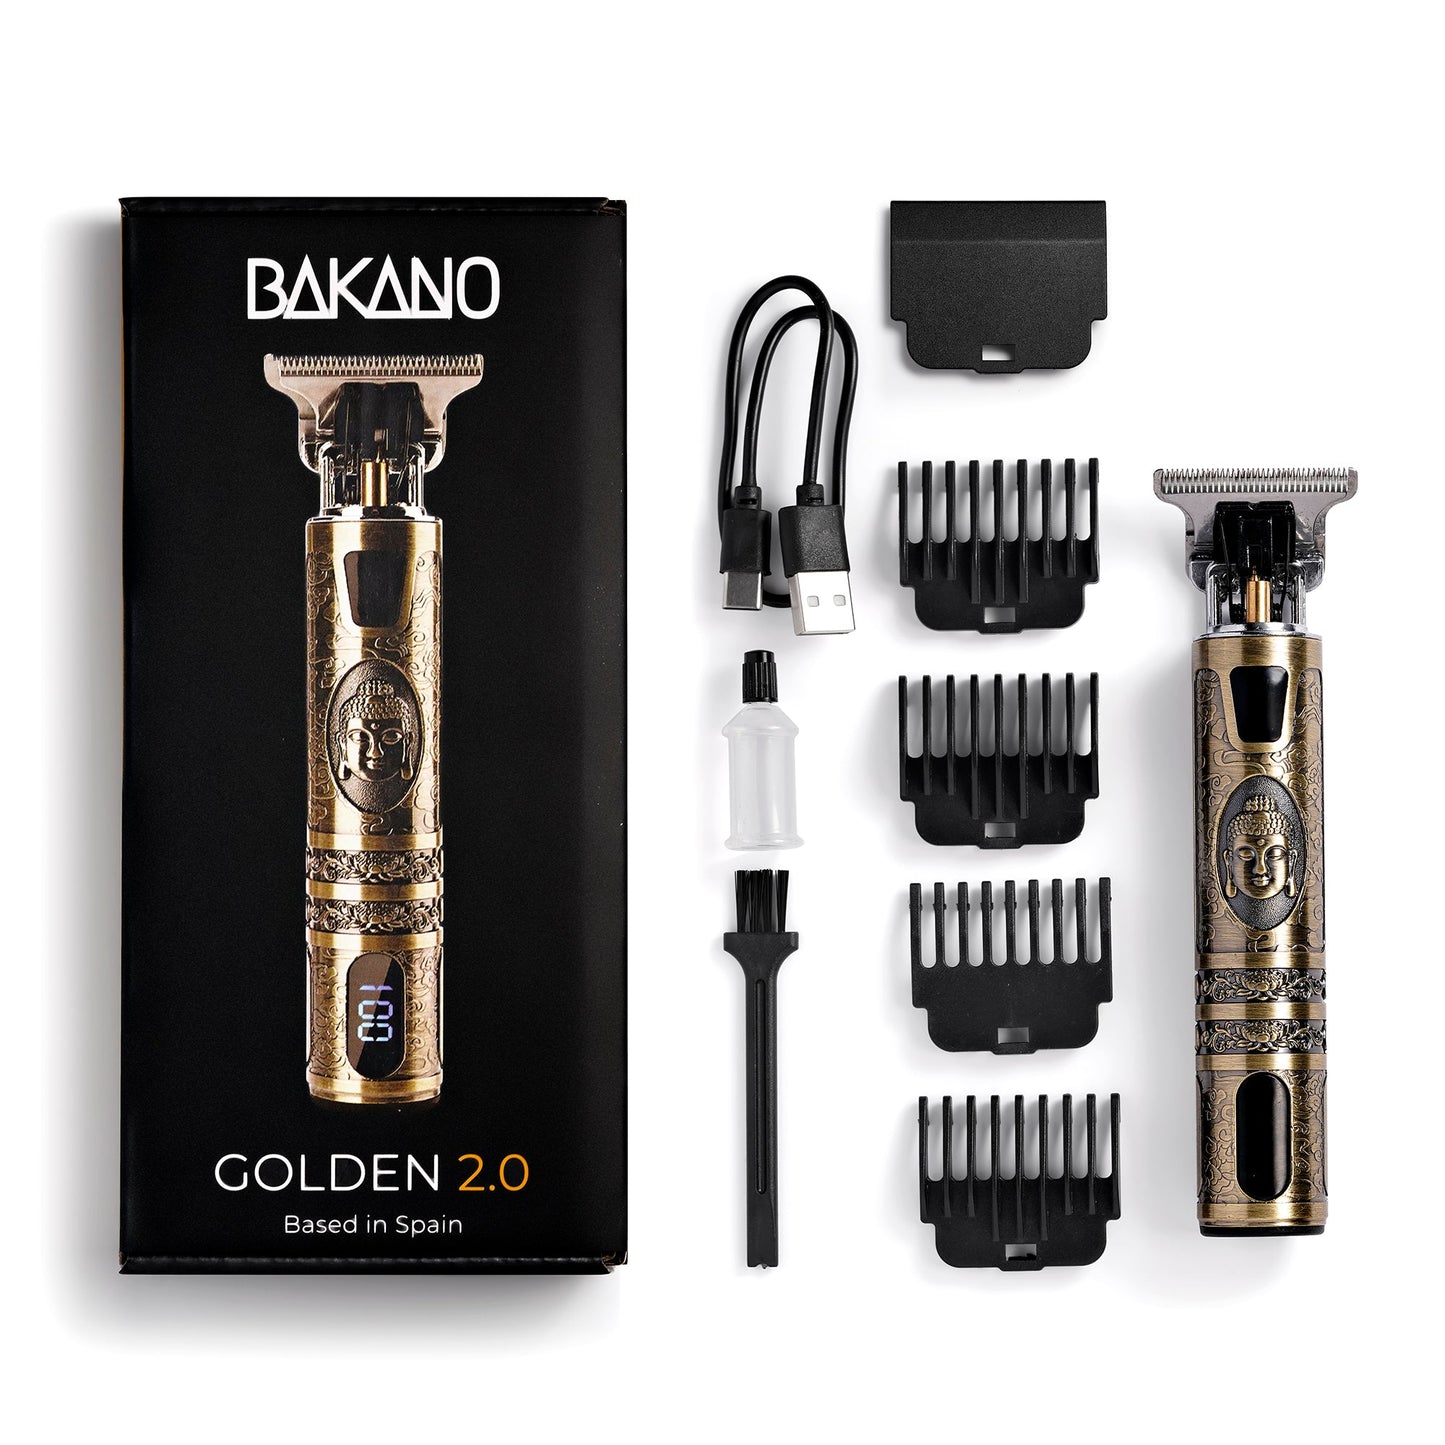 Navalha Profissional Bakano Golden 2.0™